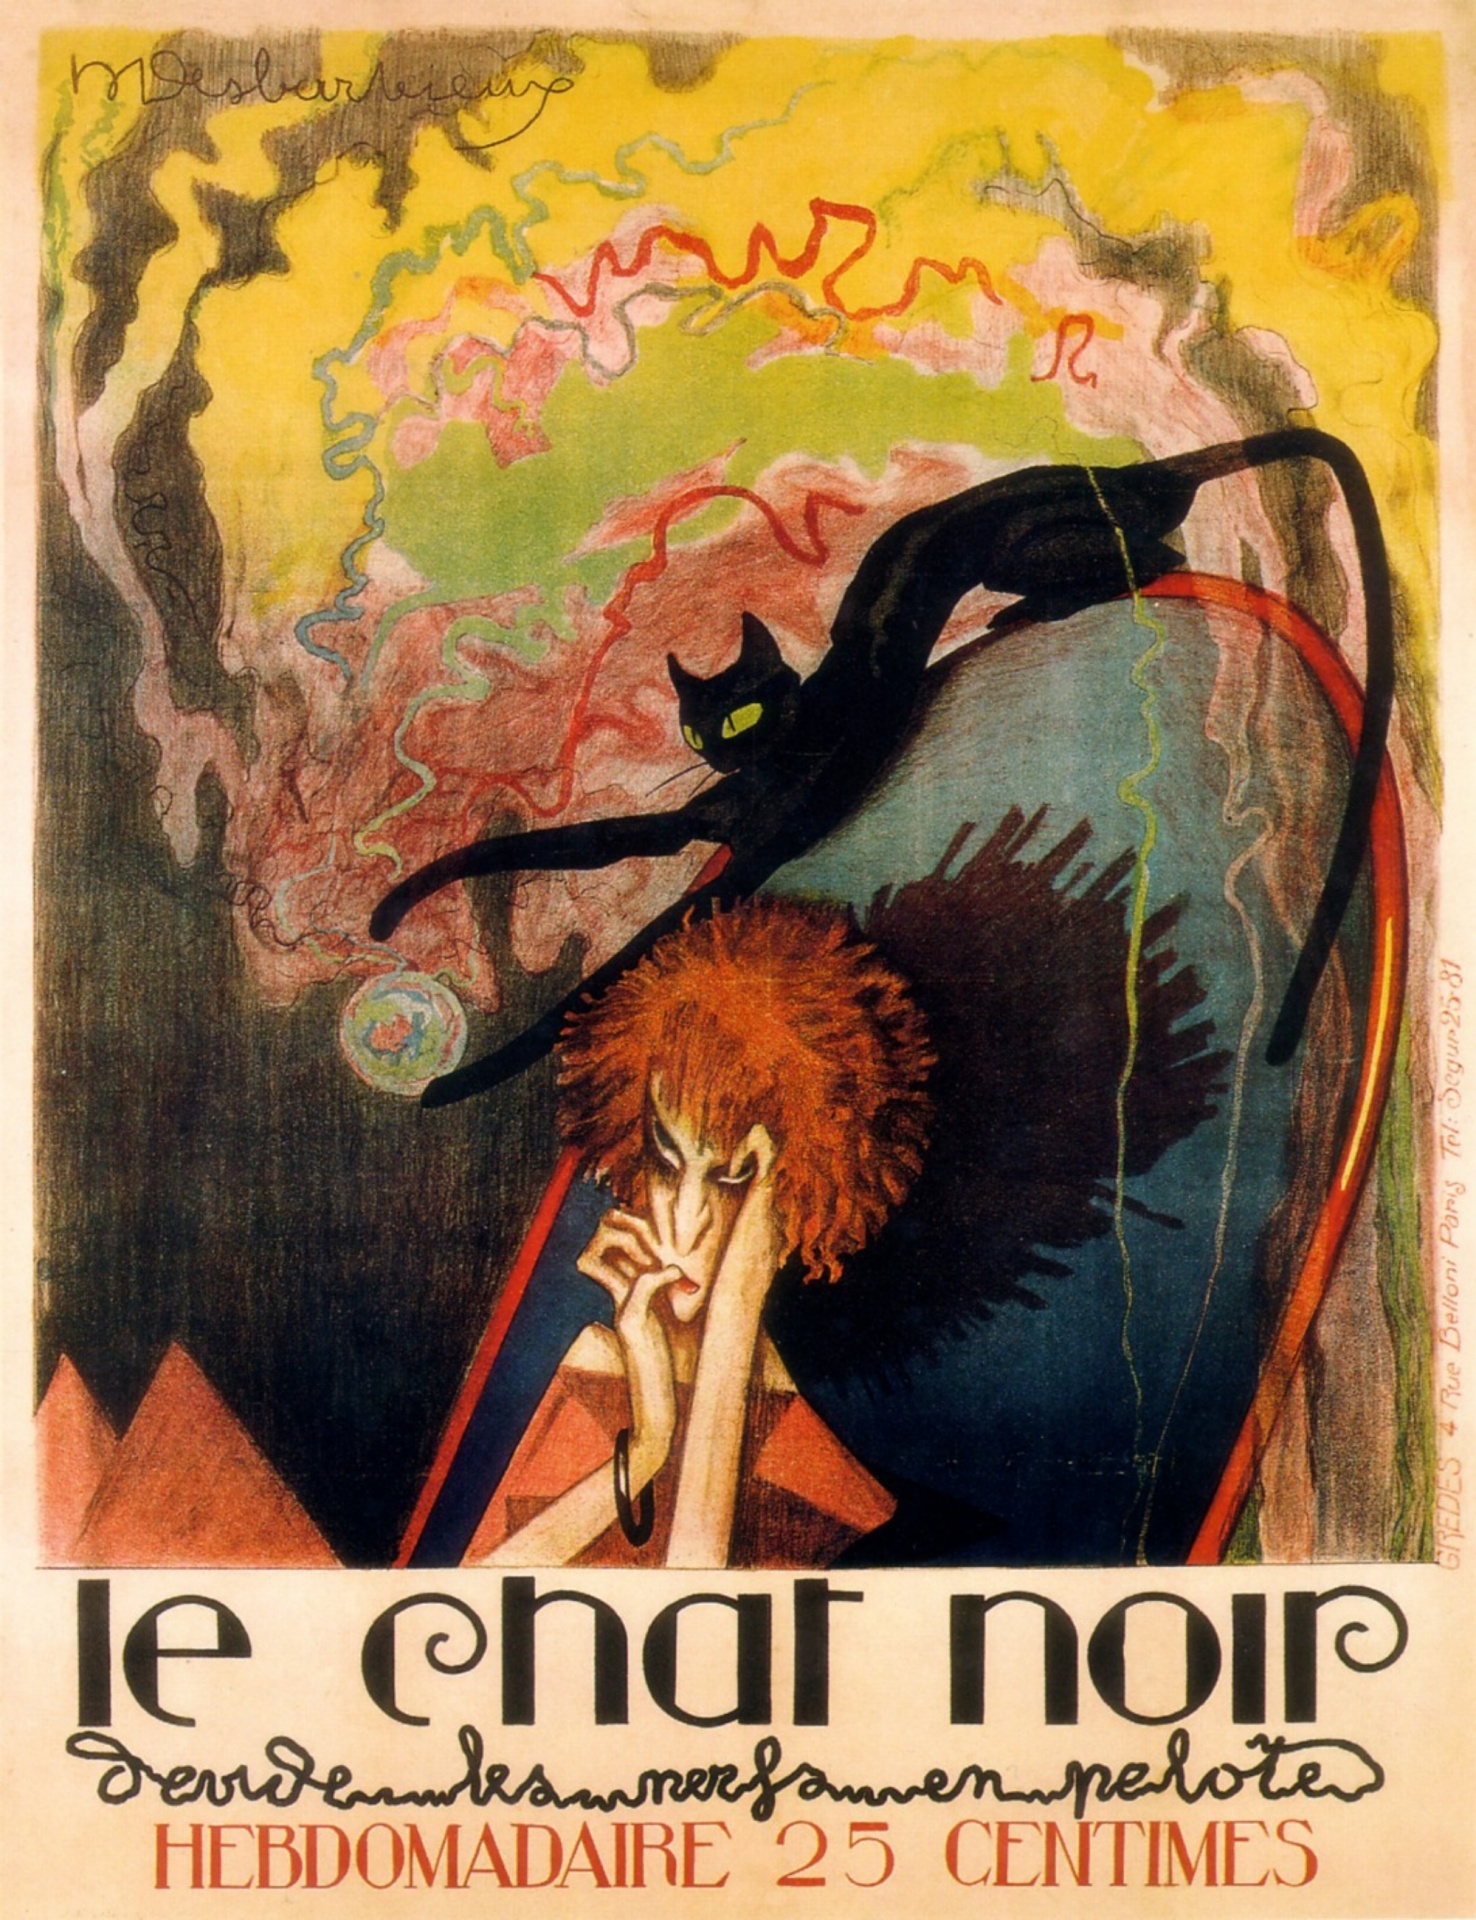 Art nouveau art illustration woman art nouveau vintage poster